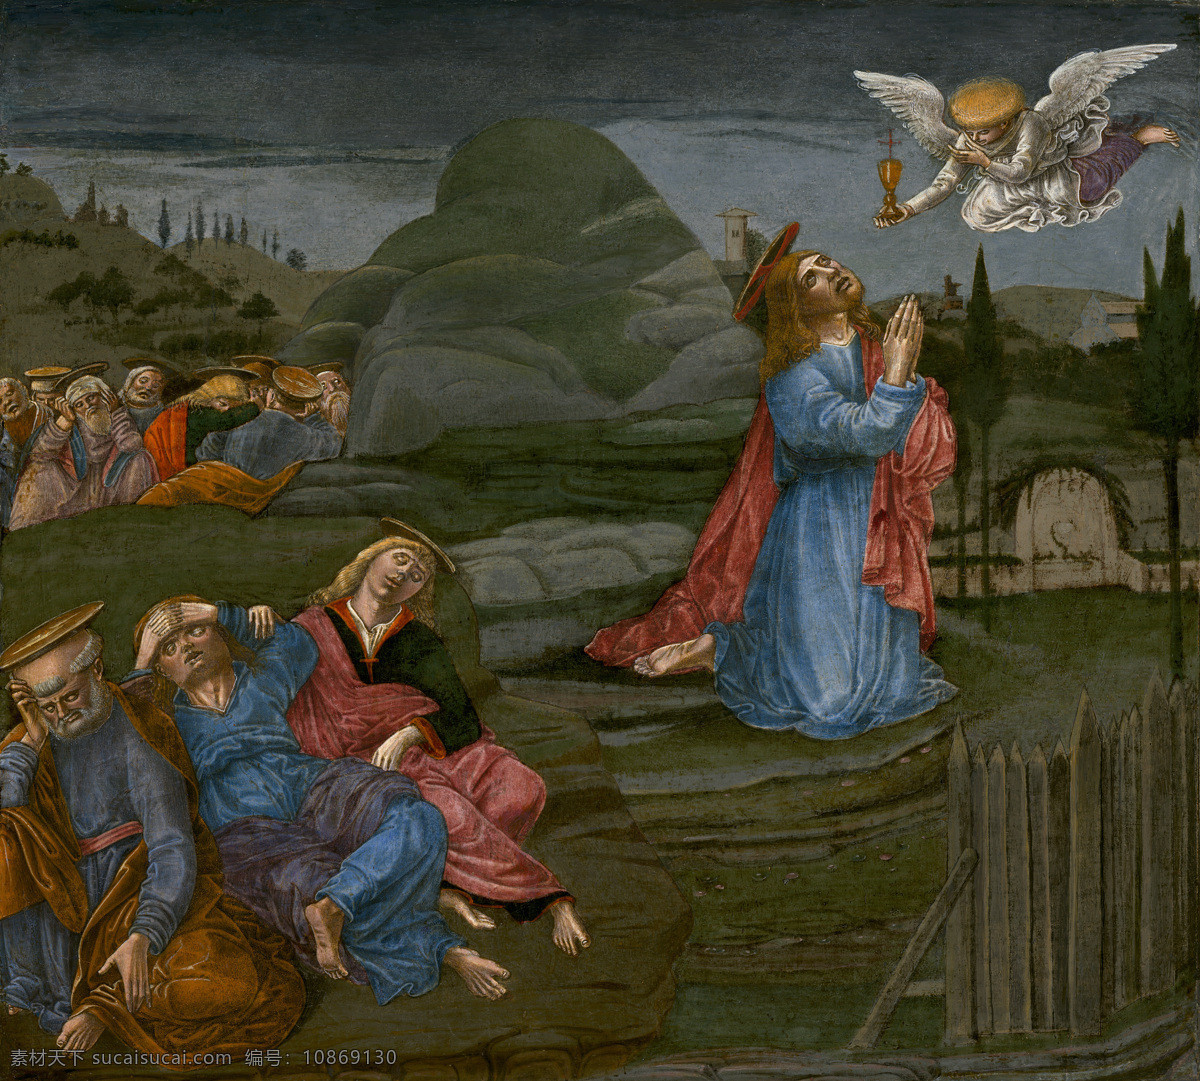 祷告 圣经故事 耶稣 夜晚时分 众圣徙 沉睡之际 天使降临 古典油画 宗教油画 油画 文化艺术 绘画书法